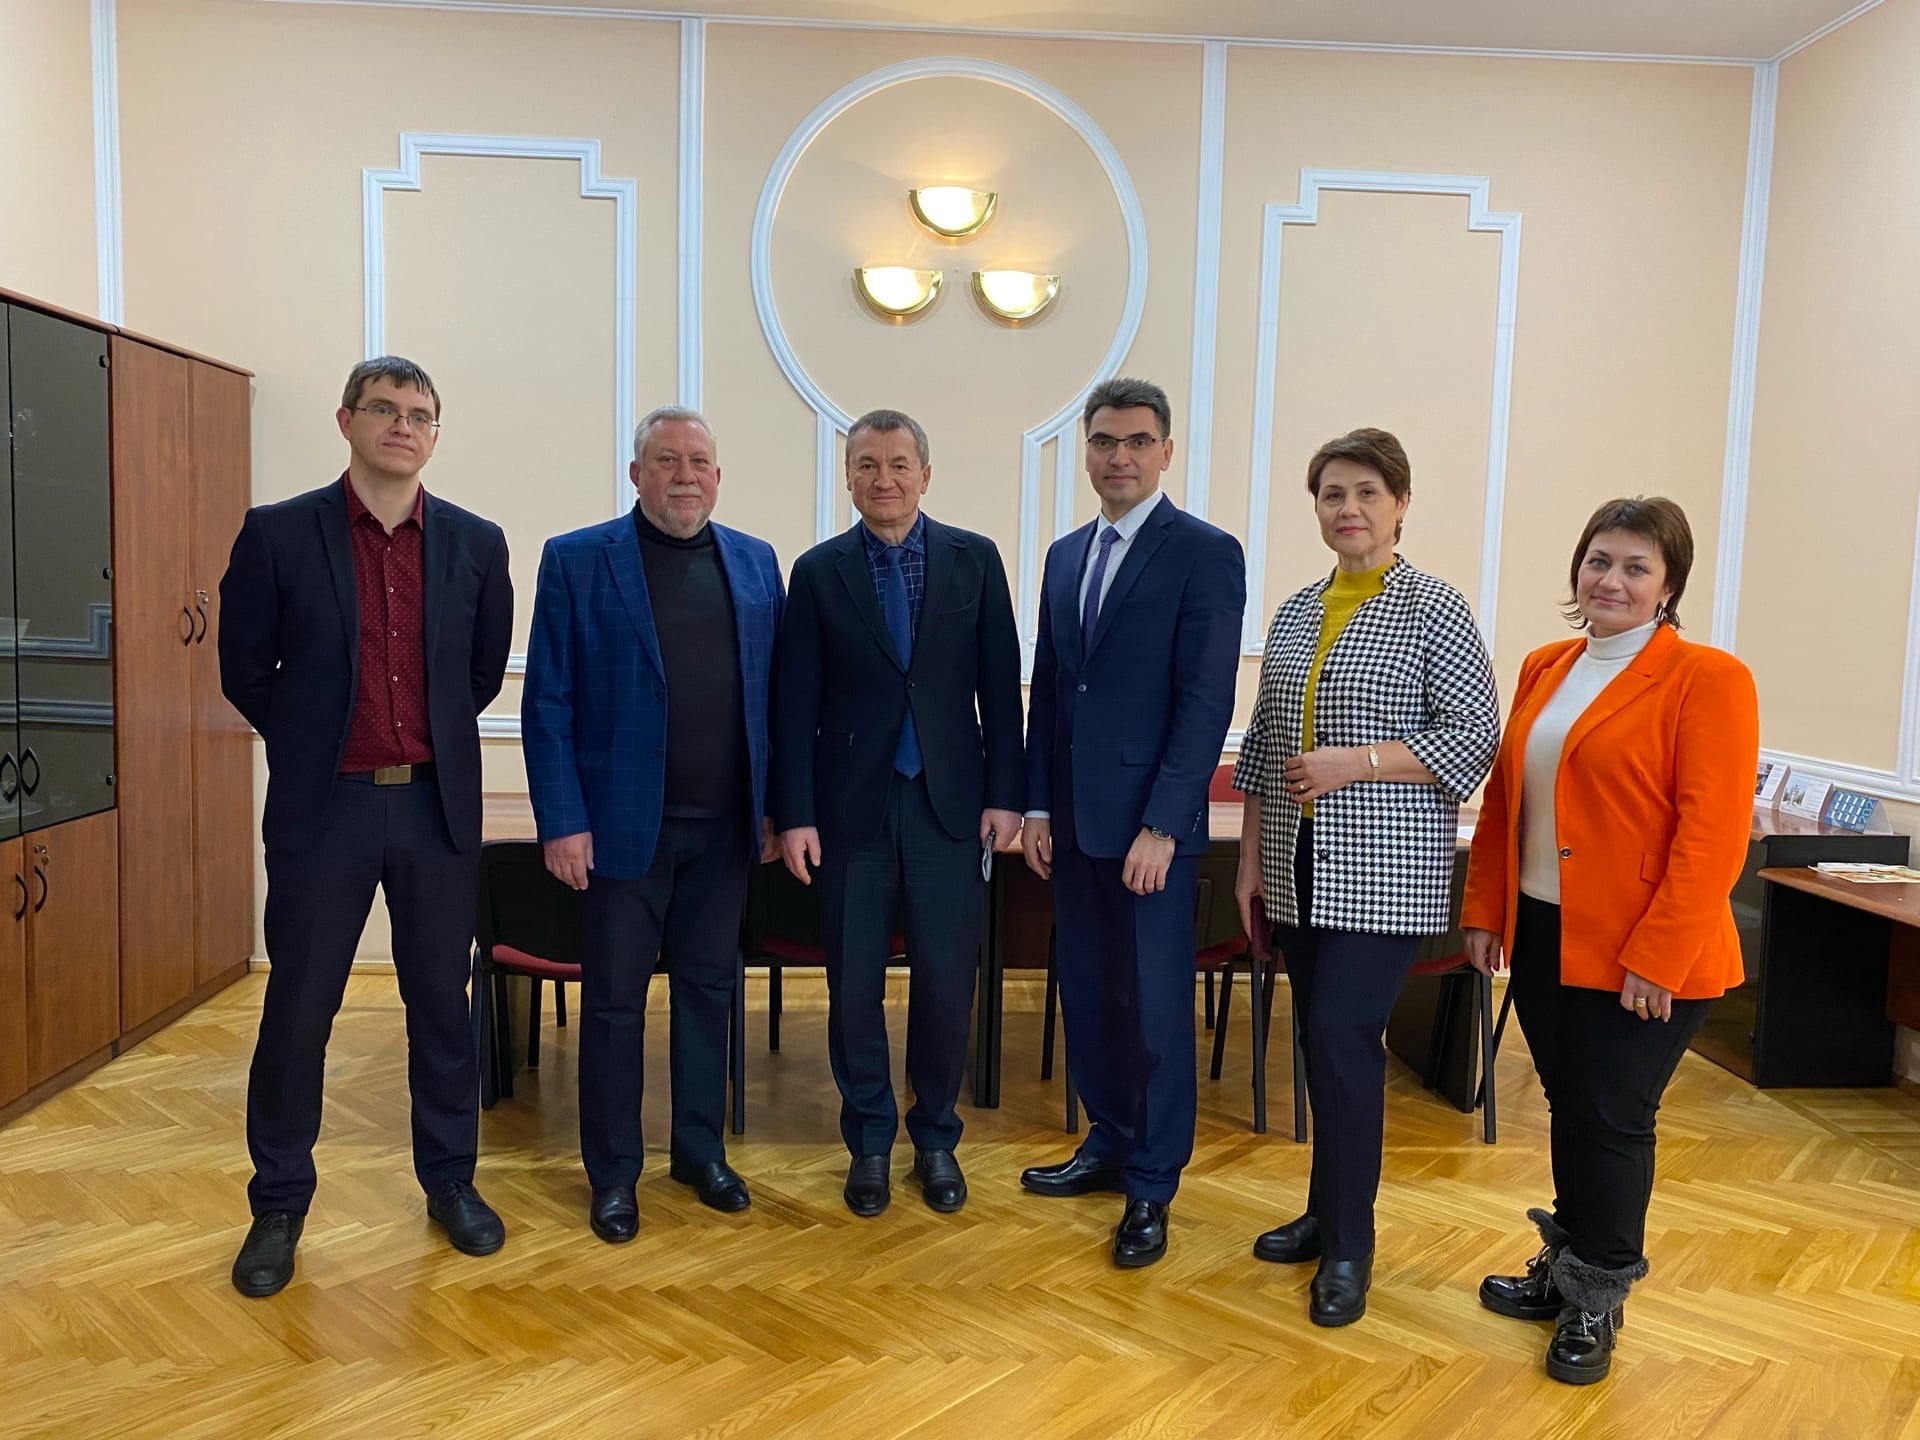 Сегодня состоялась встреча руководителей Комитета по тарифам и ценам Курской области и руководителей Курского филиала Финуниверситета.